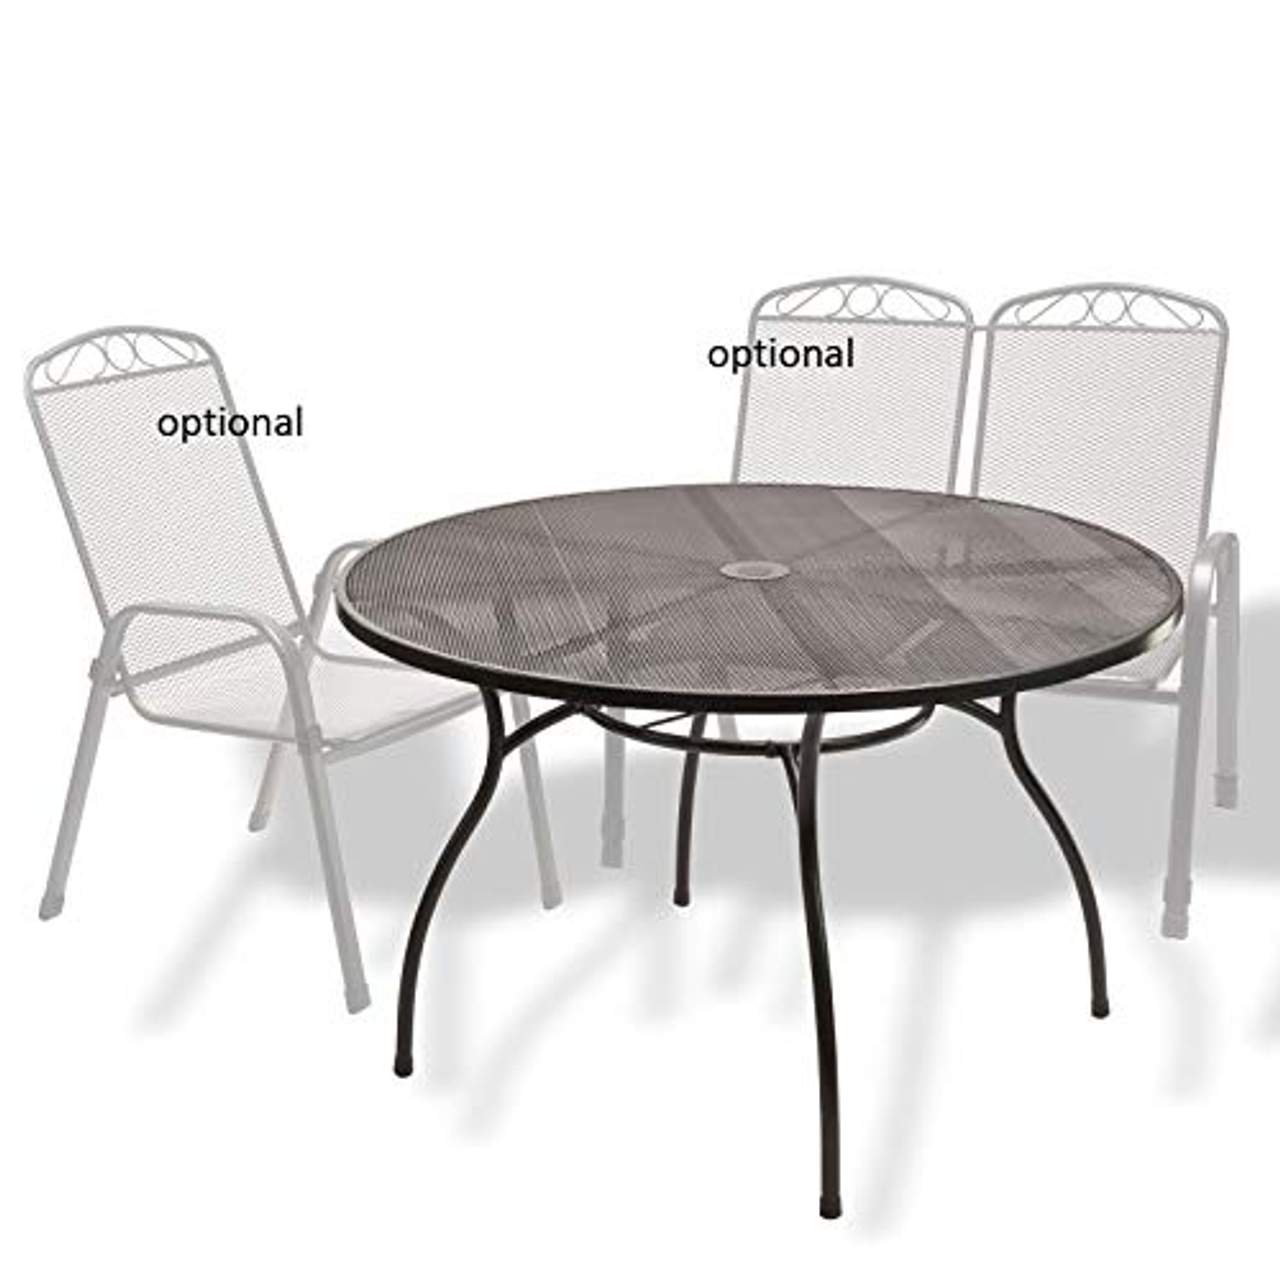 Streckmetalltisch Metalltisch Gartentisch Tisch rund"Las